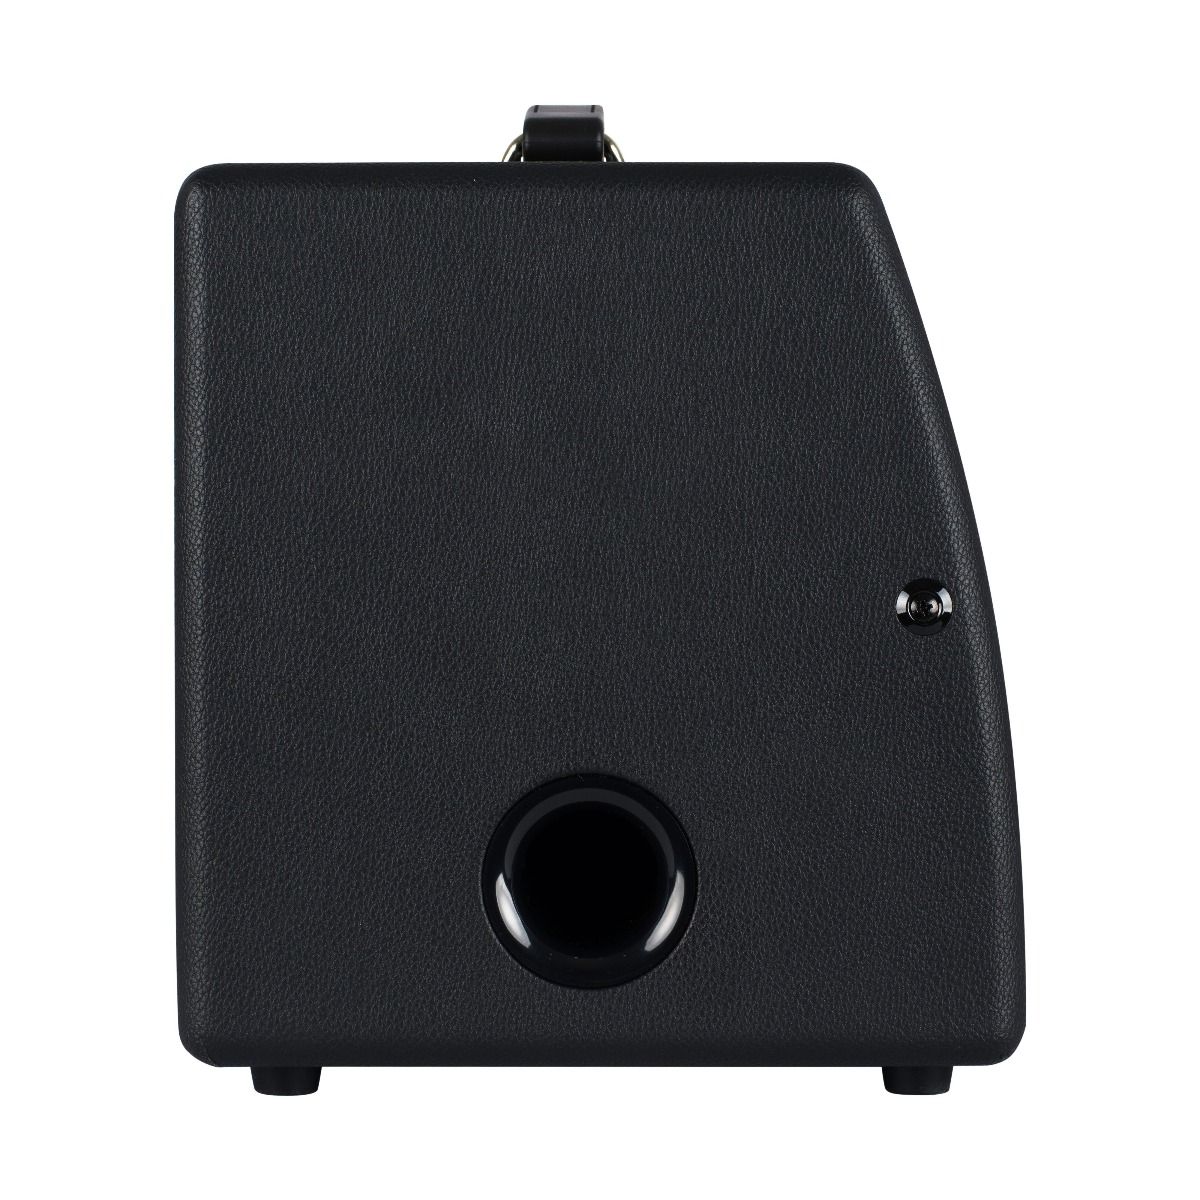 Blackstar Sonnet 60 Watt Acoustic Amplifier in Black